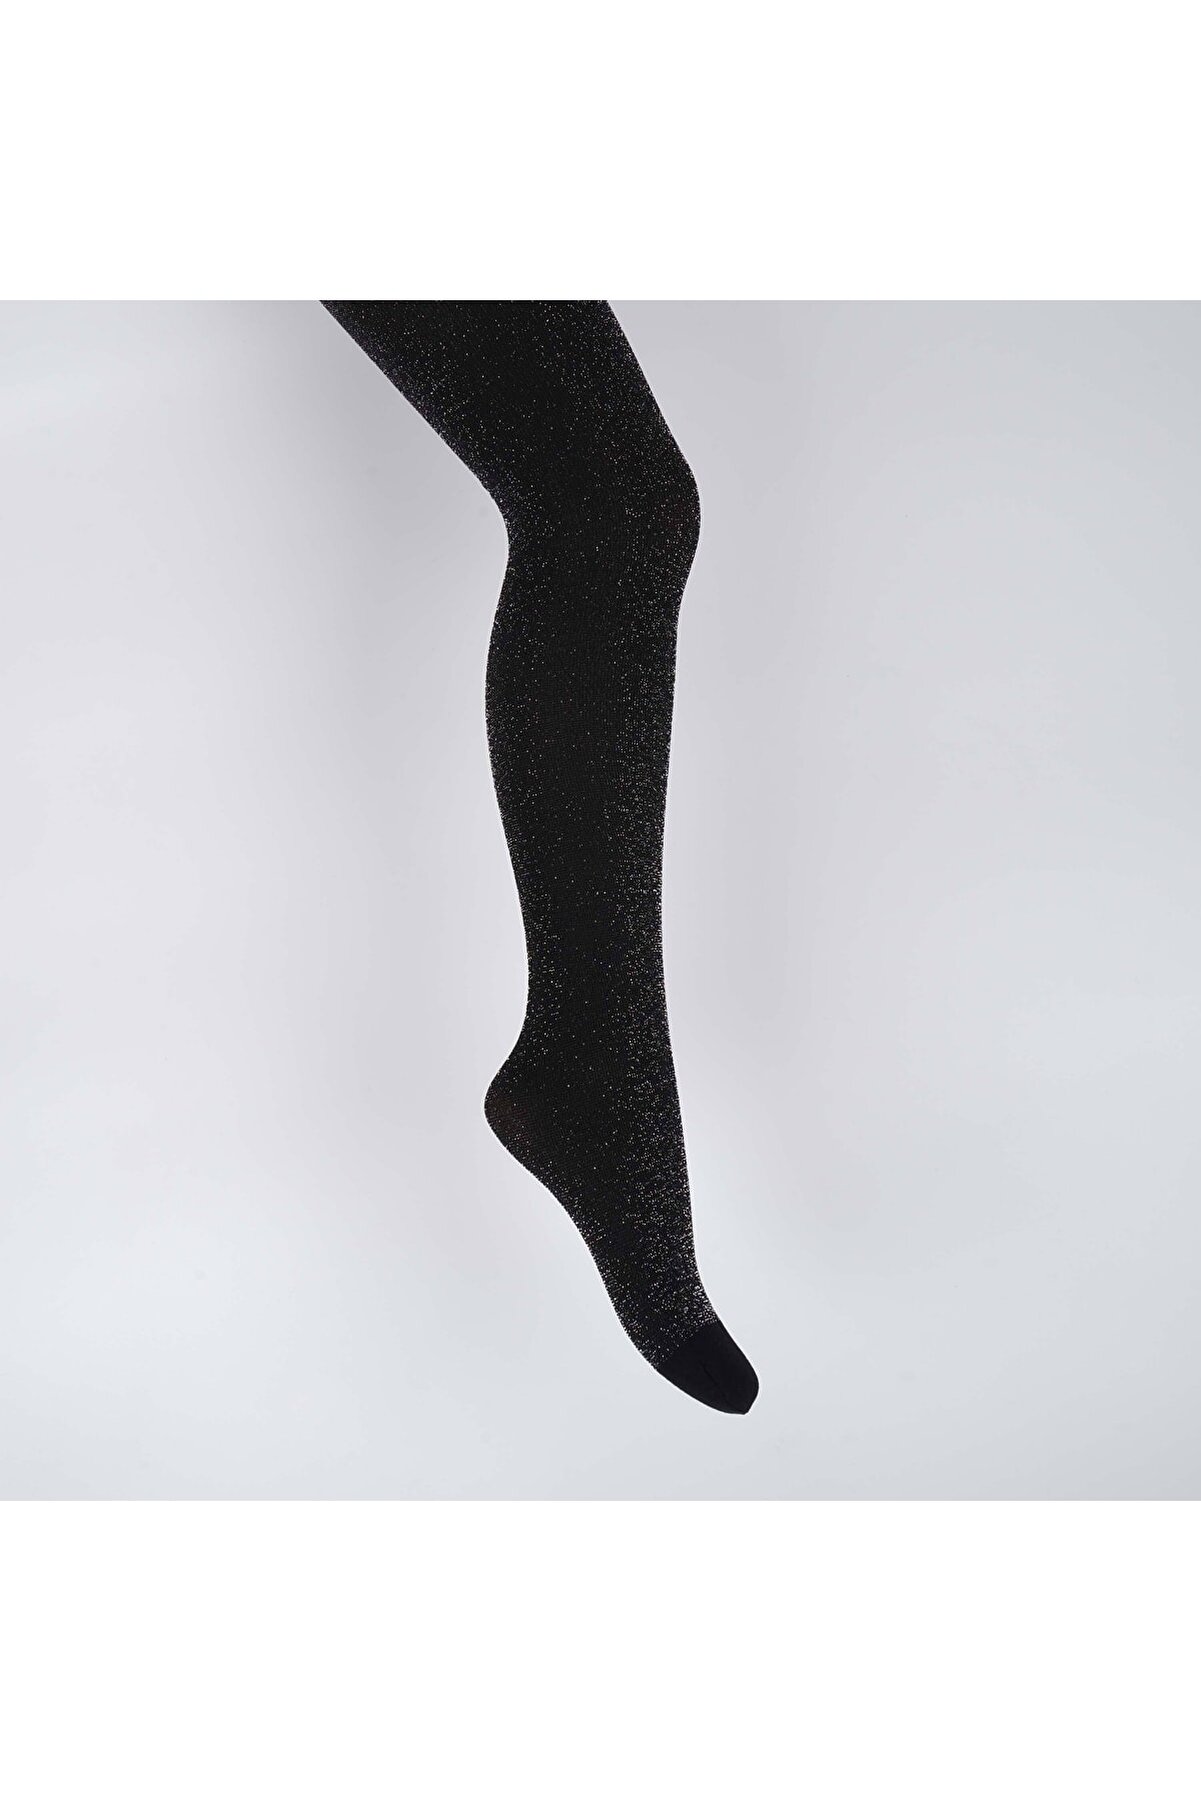 Katamino Işıl Kız Çocuk Simli Külotlu Çorap